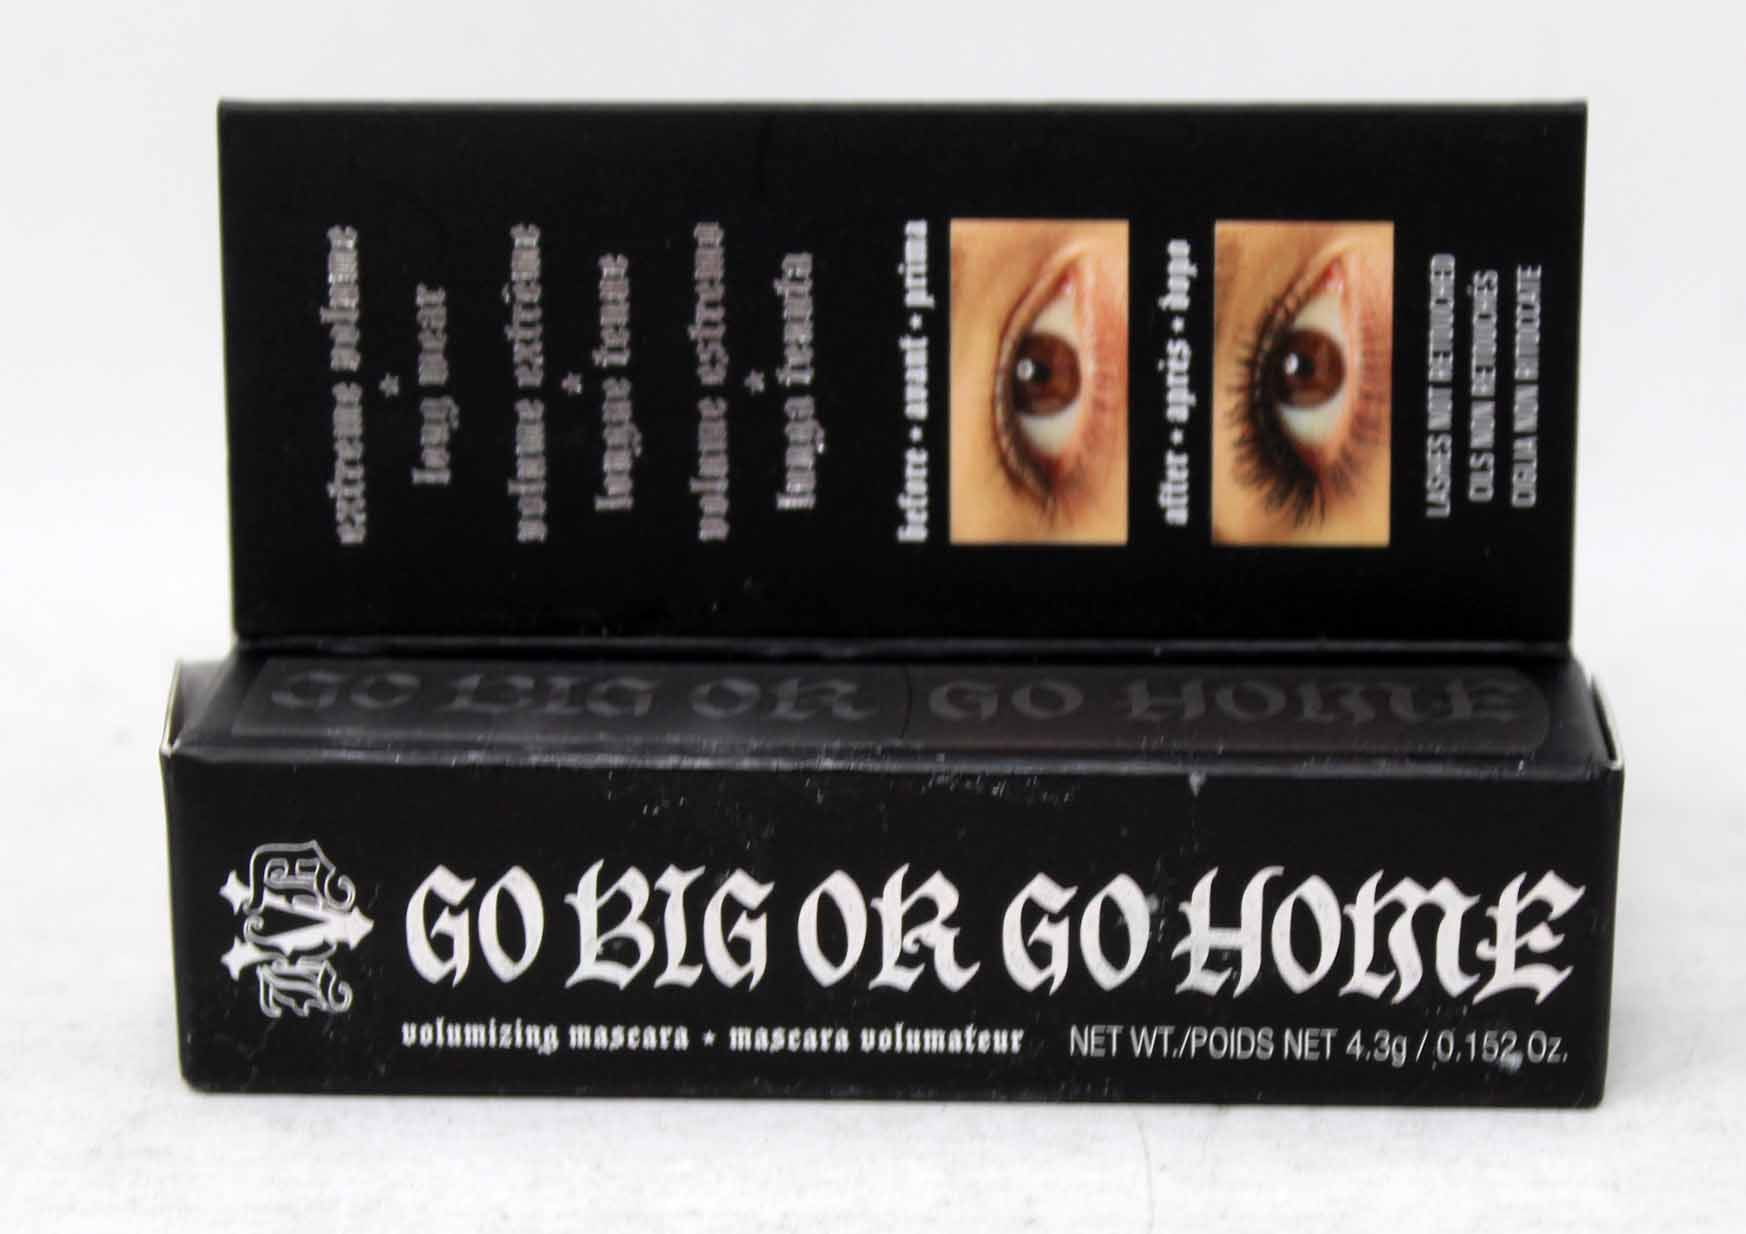 Von D Go Big Or Go Home Volumizing Mascara Black 0.15 Oz - Walmart.com